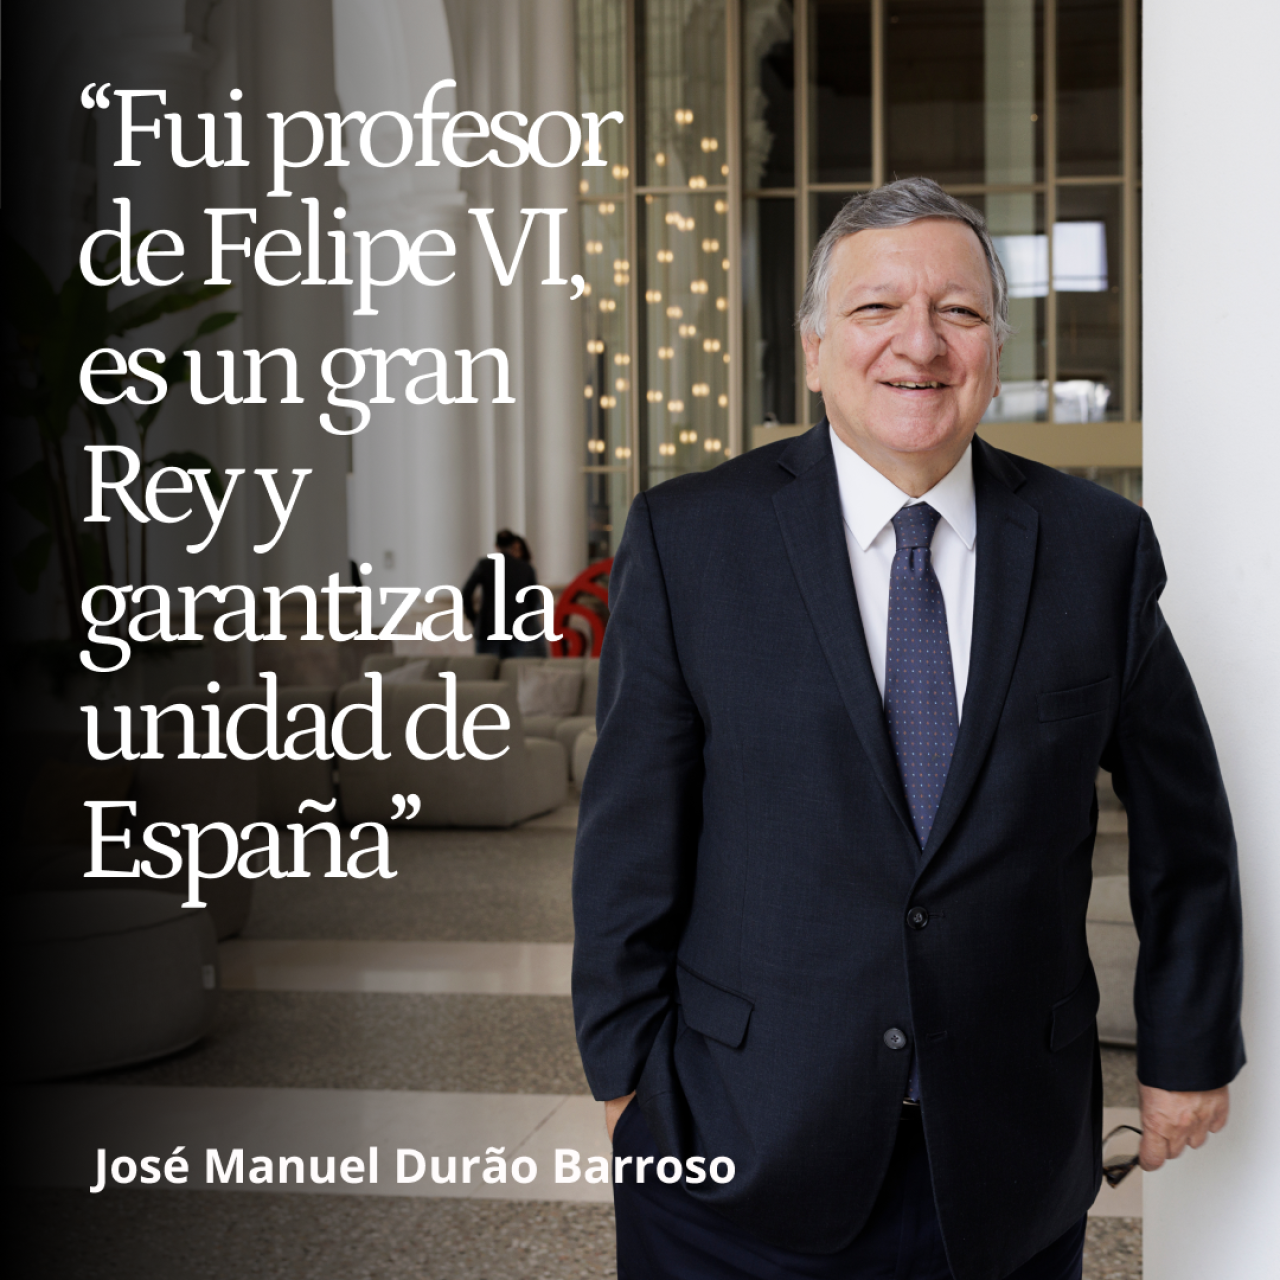 Durão Barroso: "Fui profesor de Felipe VI, es un gran Rey y garantía de la unidad de España"